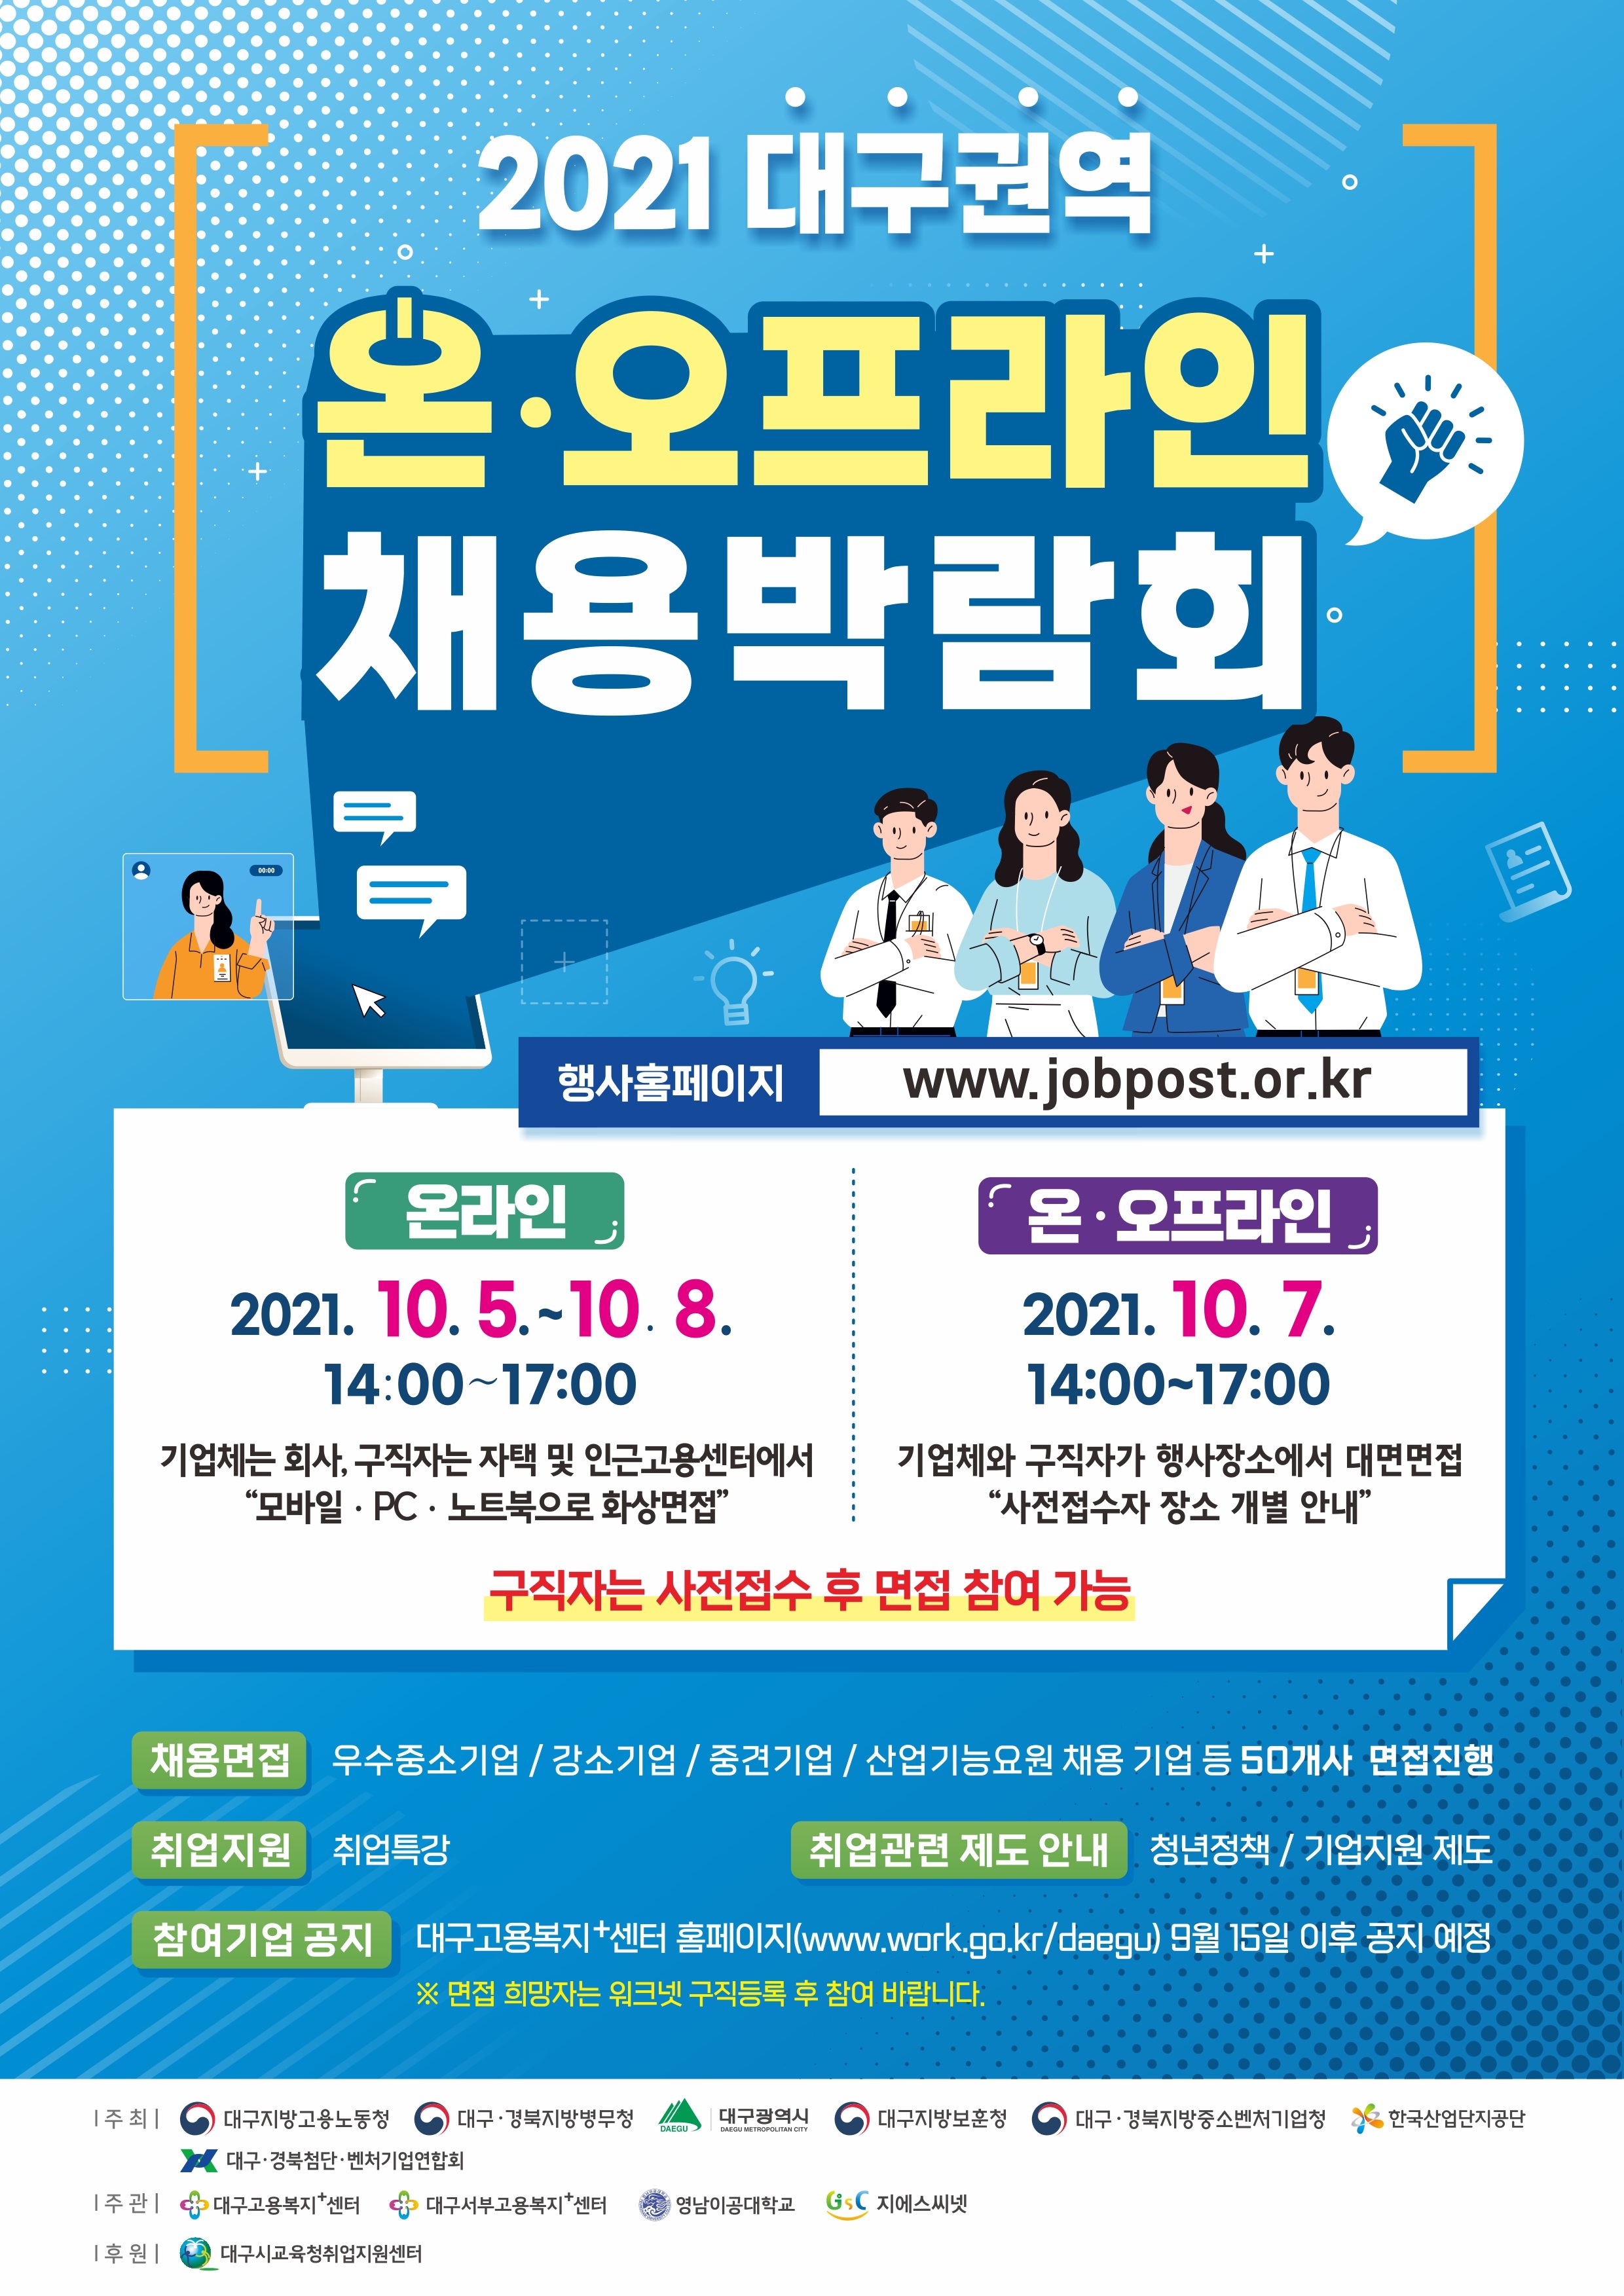 2021년 대구권역 온·오프라인 채용박람회 개최 안내